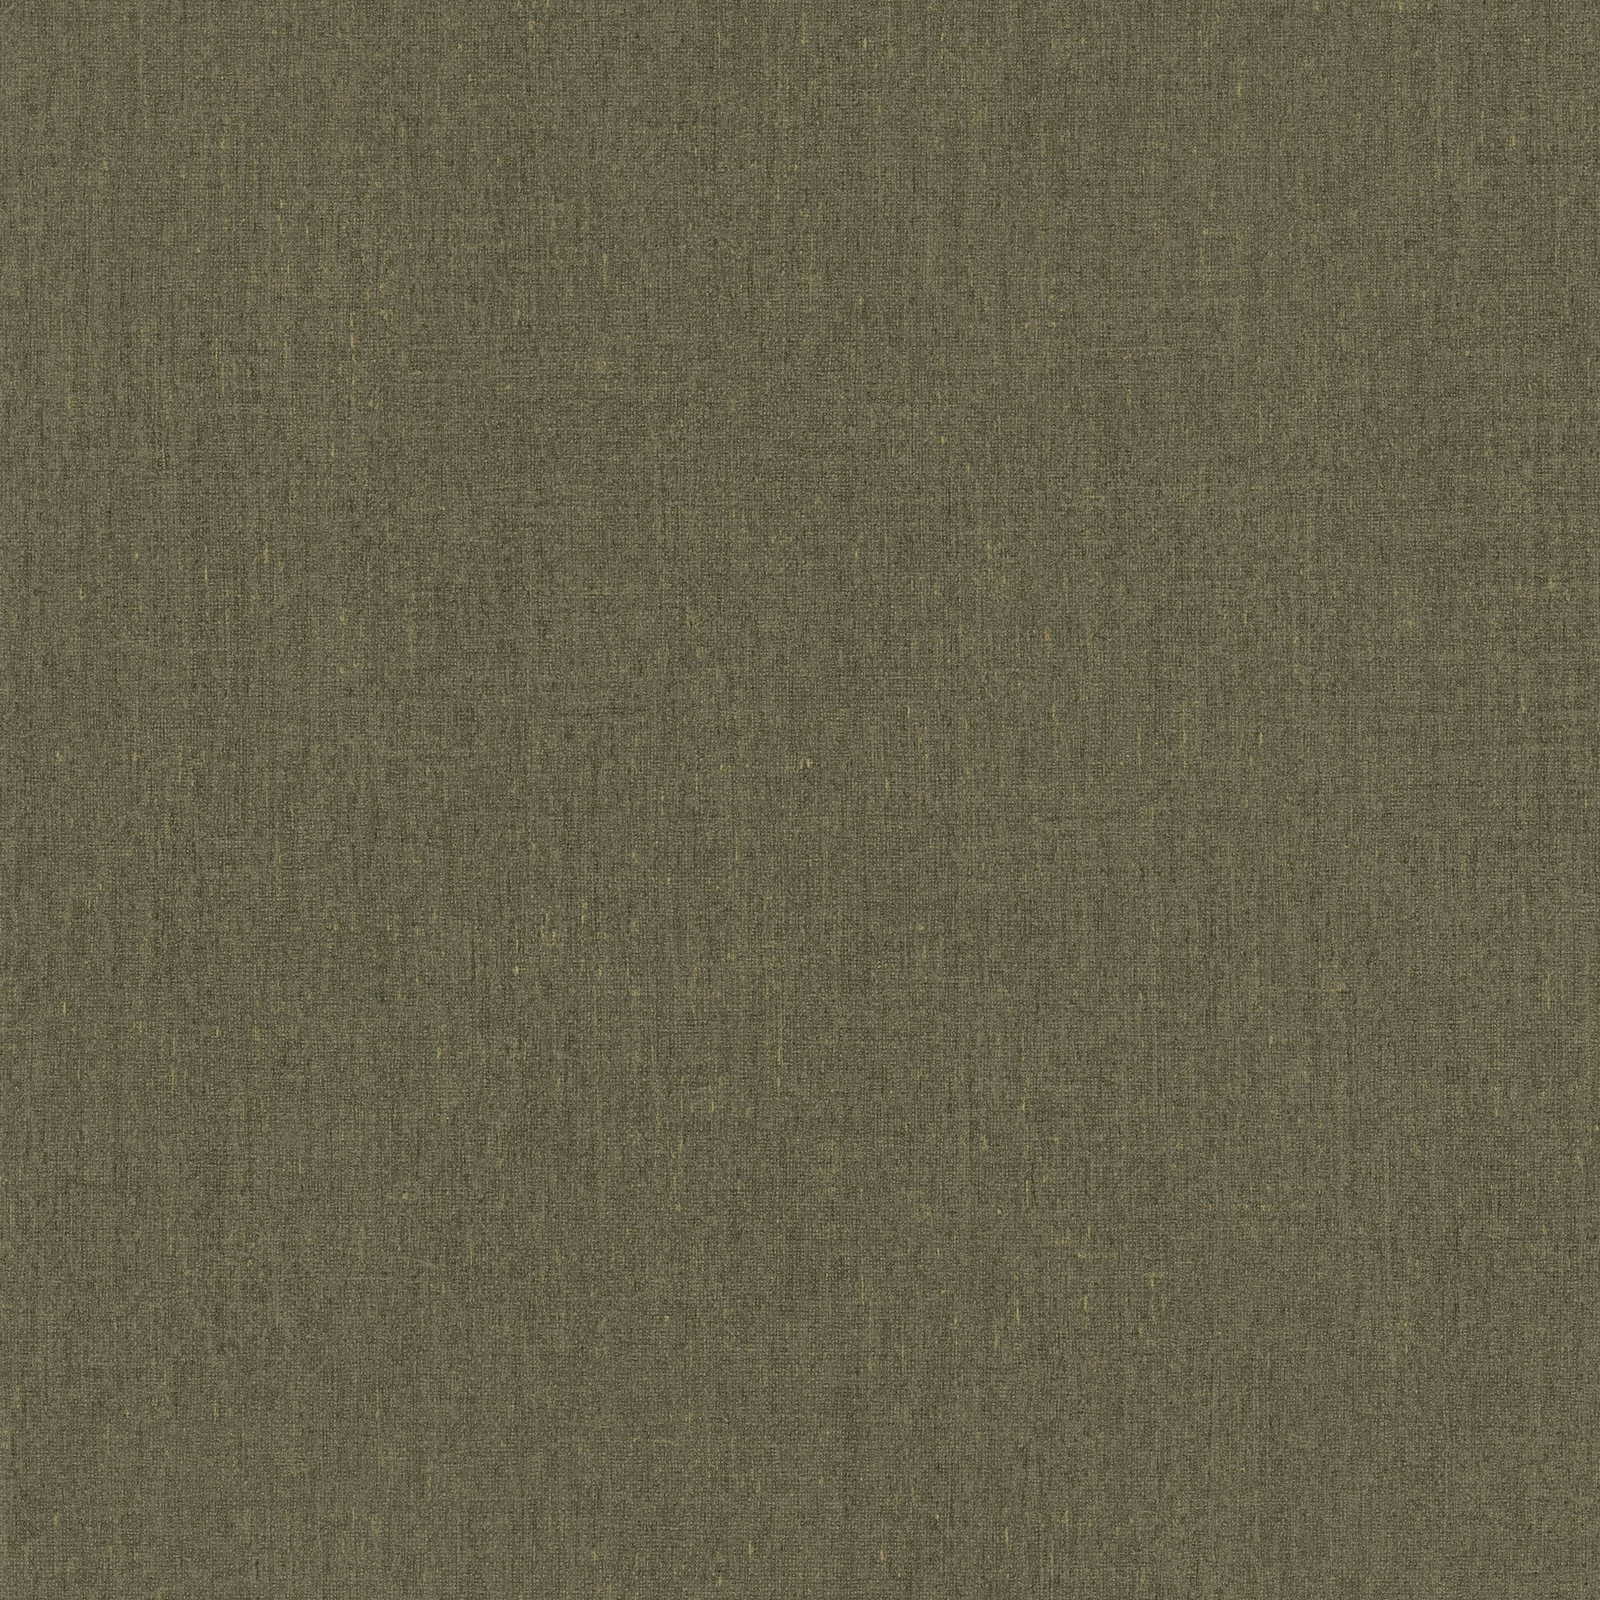 papel pintado marrón claro y oliva moteado, con detalle de estructura - marrón
